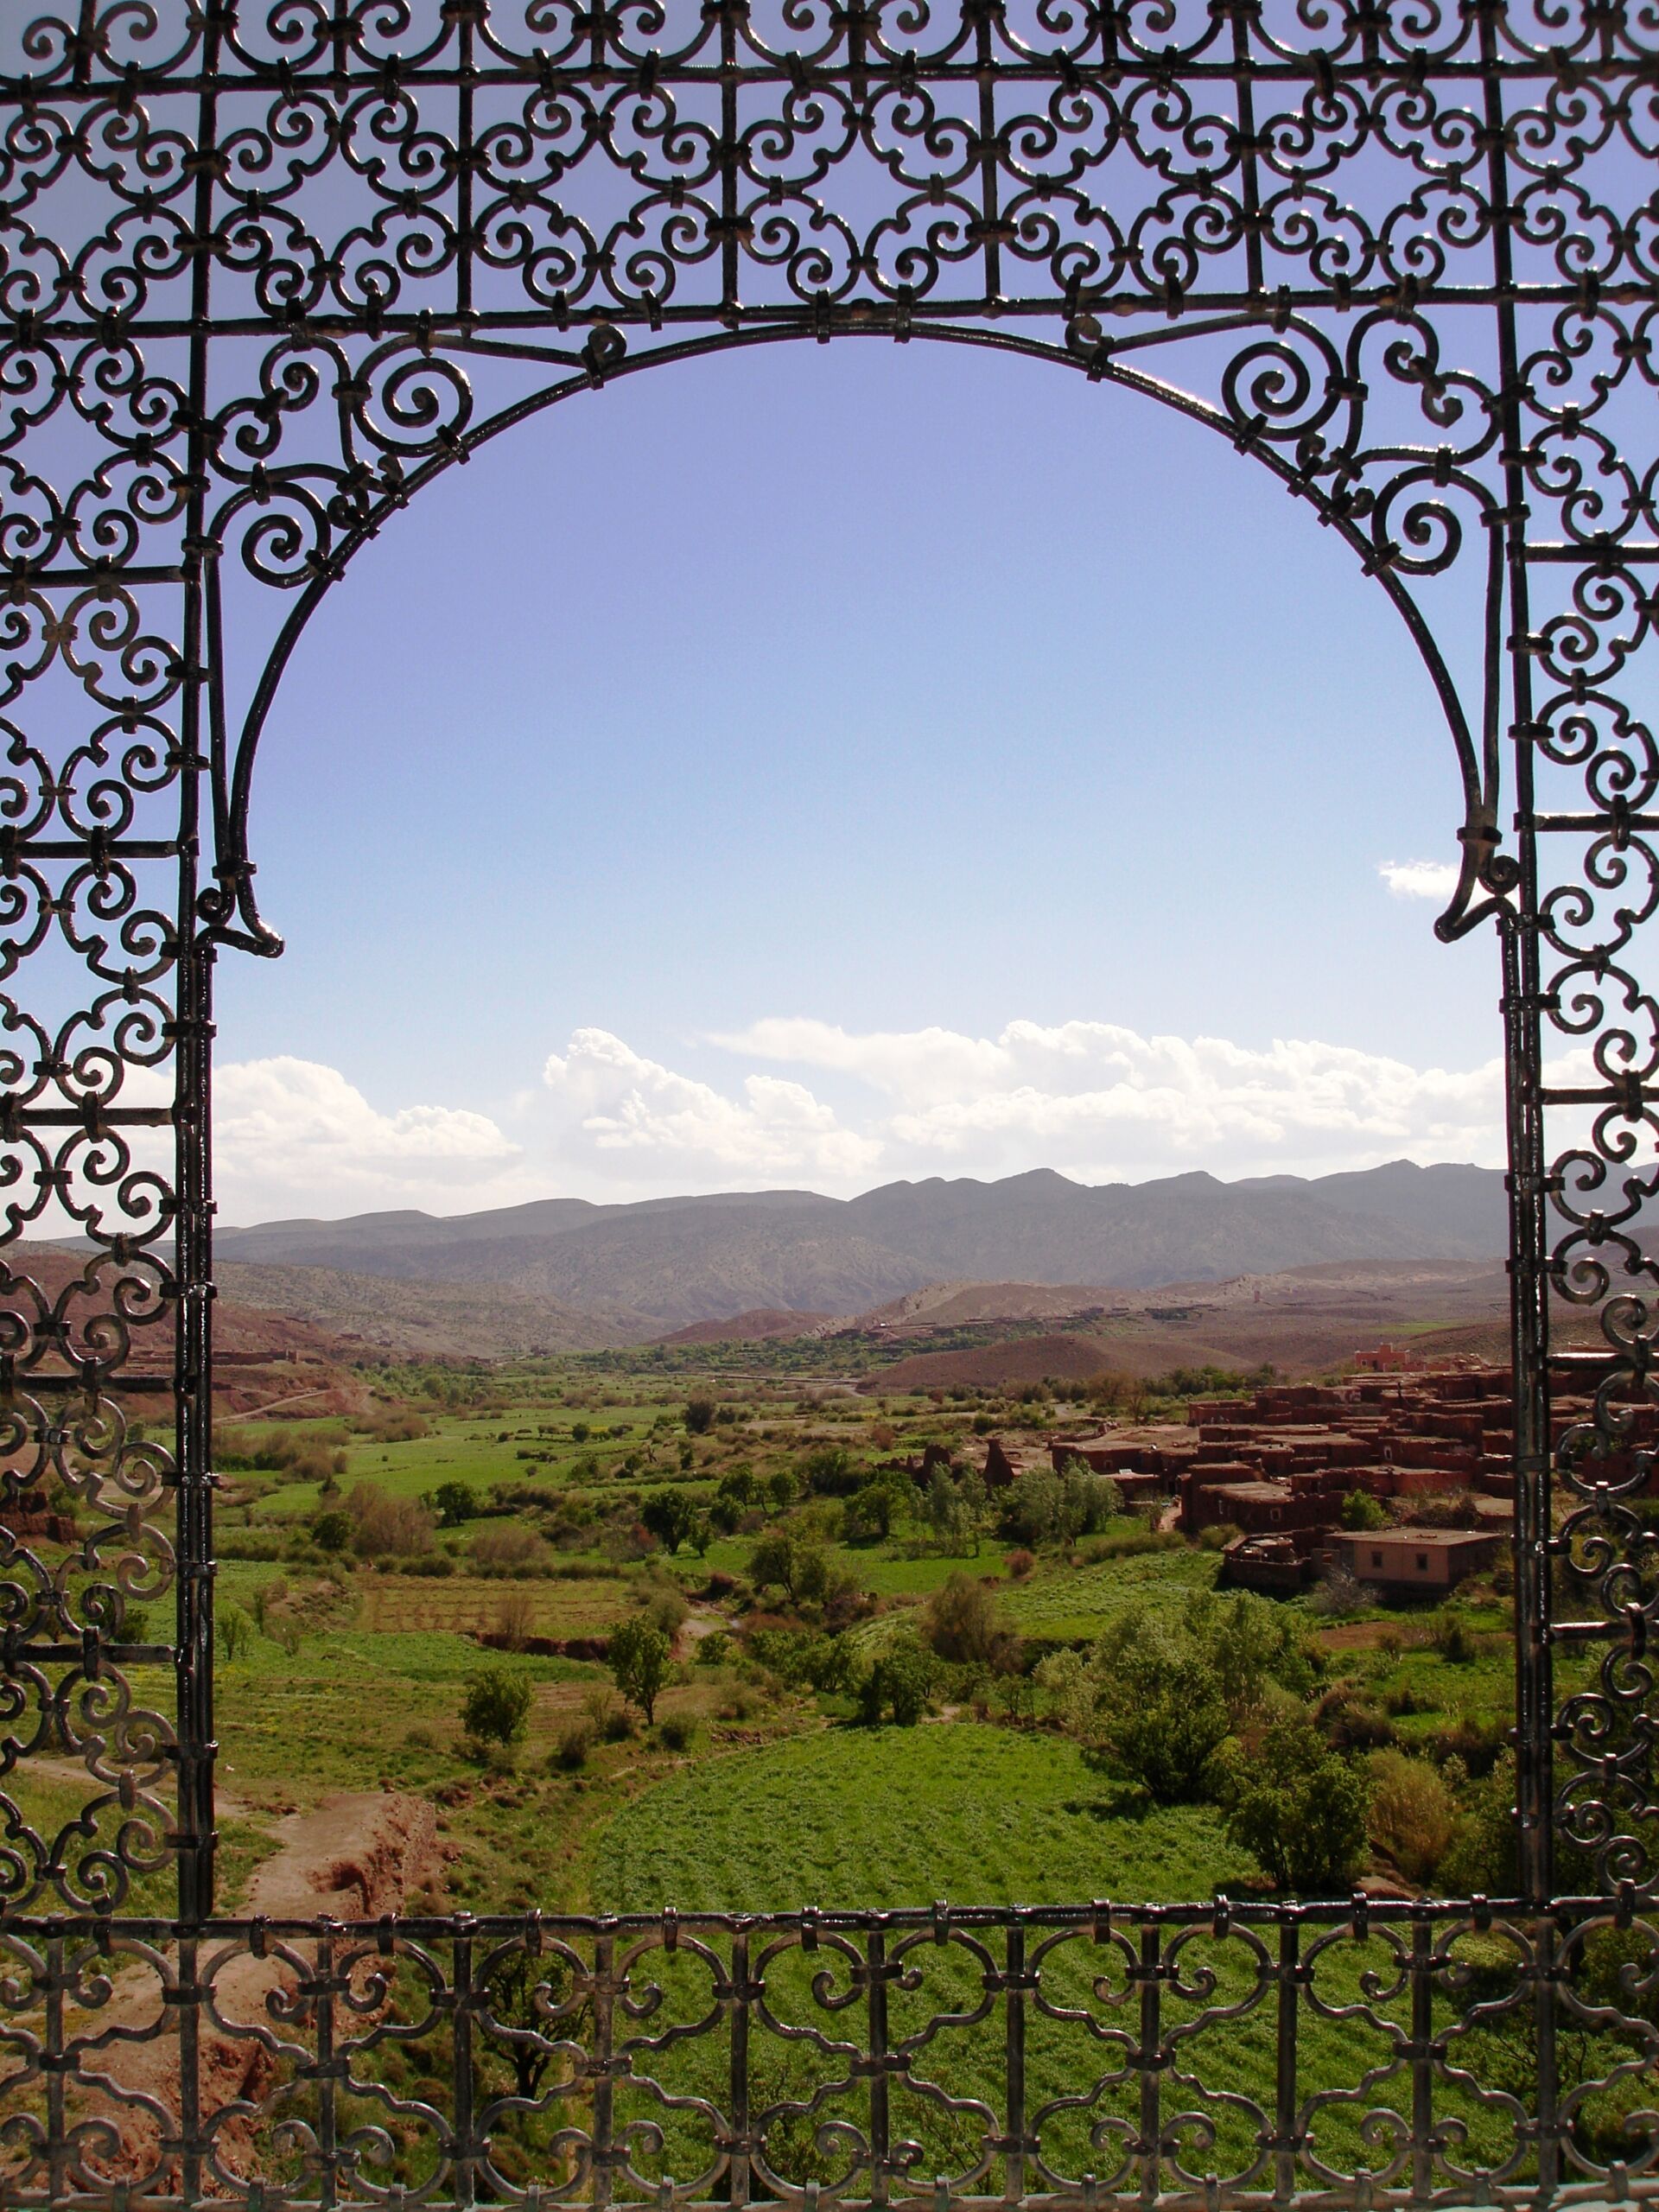 Urlaub in Marokko mit traumhafter Aussicht